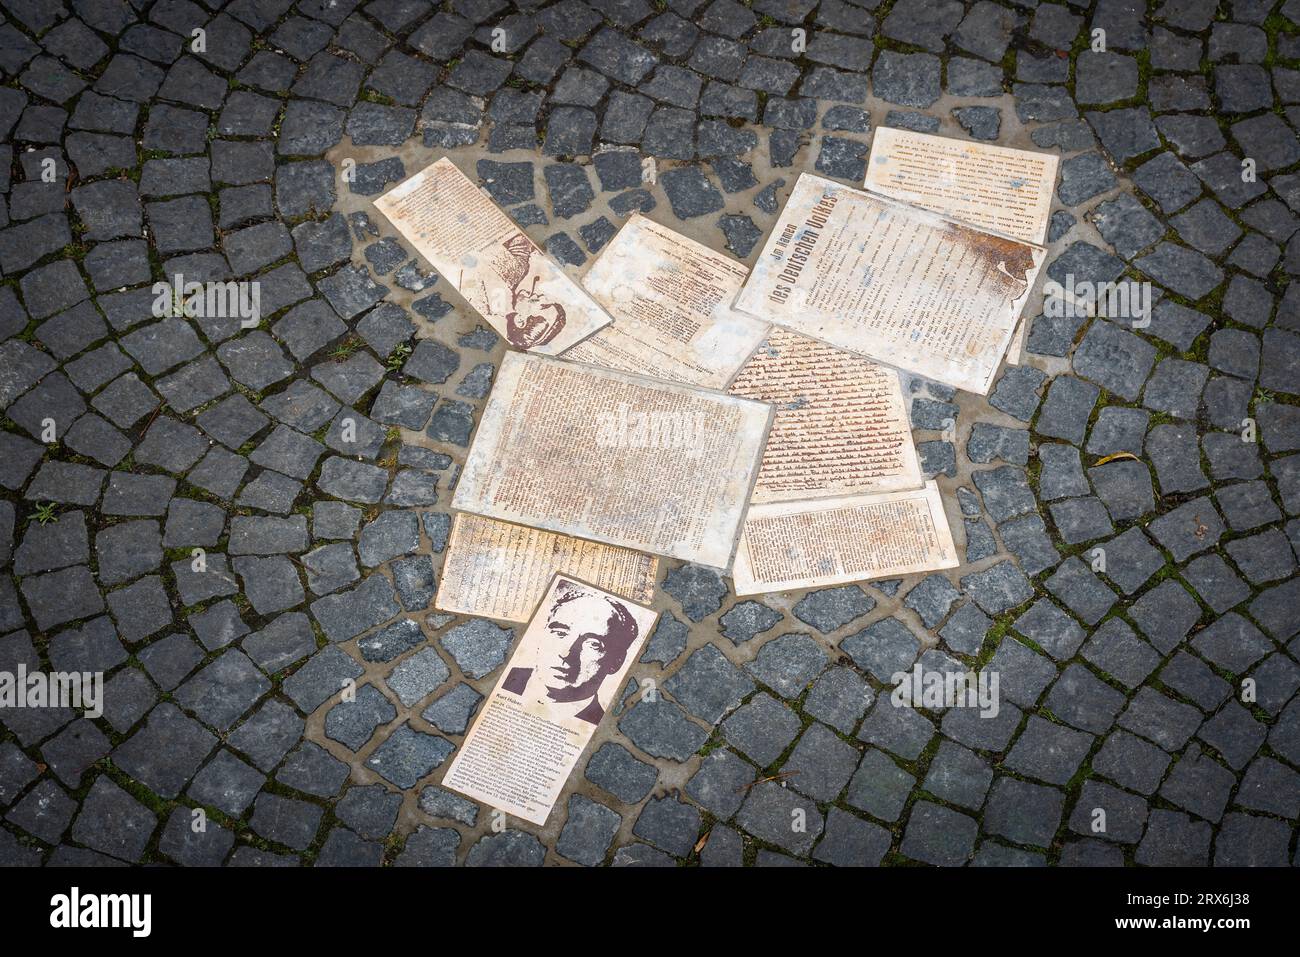 White Rose Memorial - opuscoli della resistenza anti-nazista a Geschwister-Scholl-Platz (piazza dei fratelli Scholl) - Monaco, Baviera, Germania Foto Stock